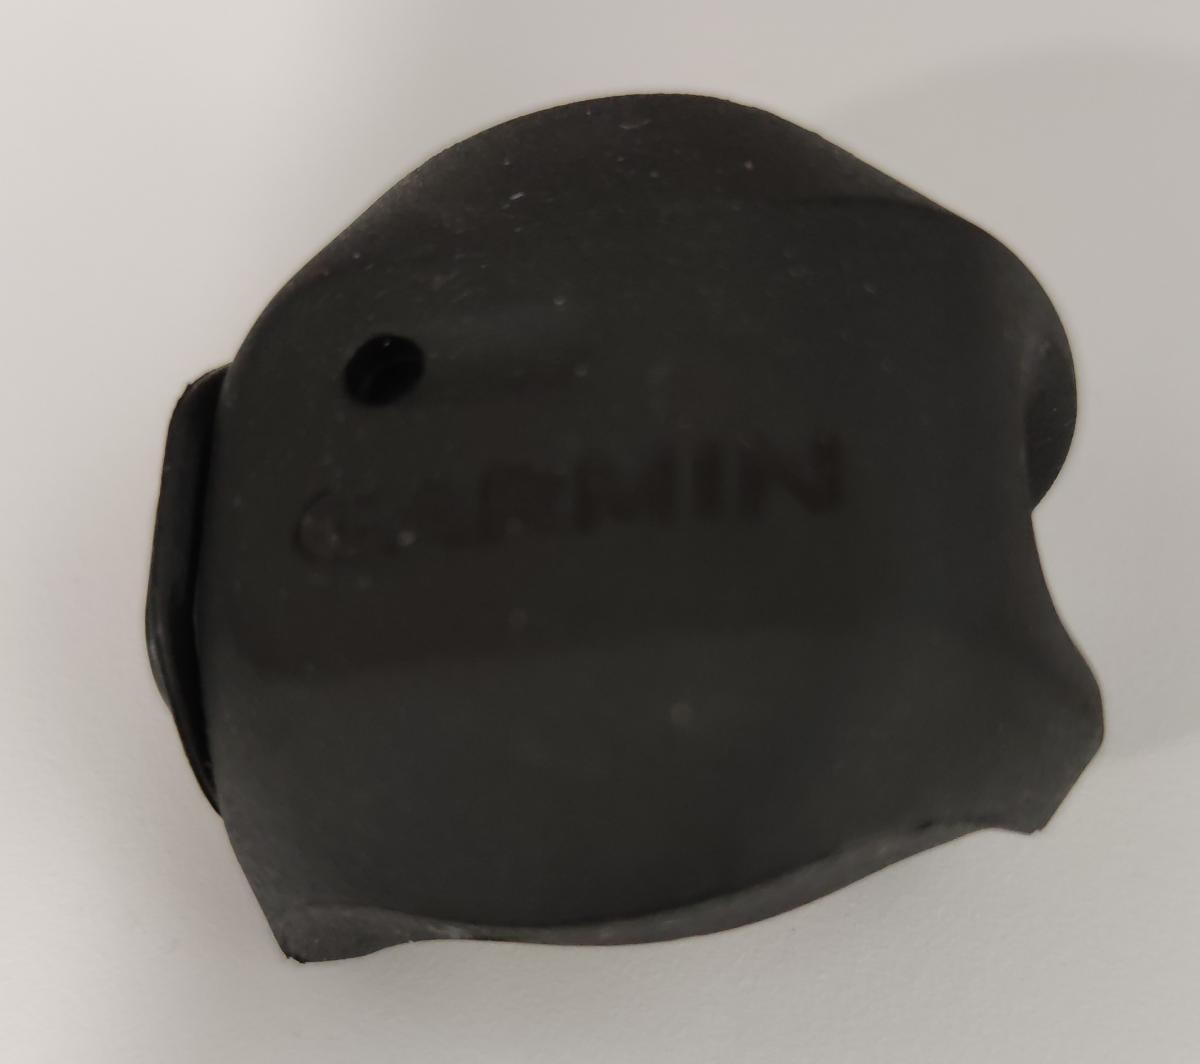 Image showing Garmin brand speed sensor